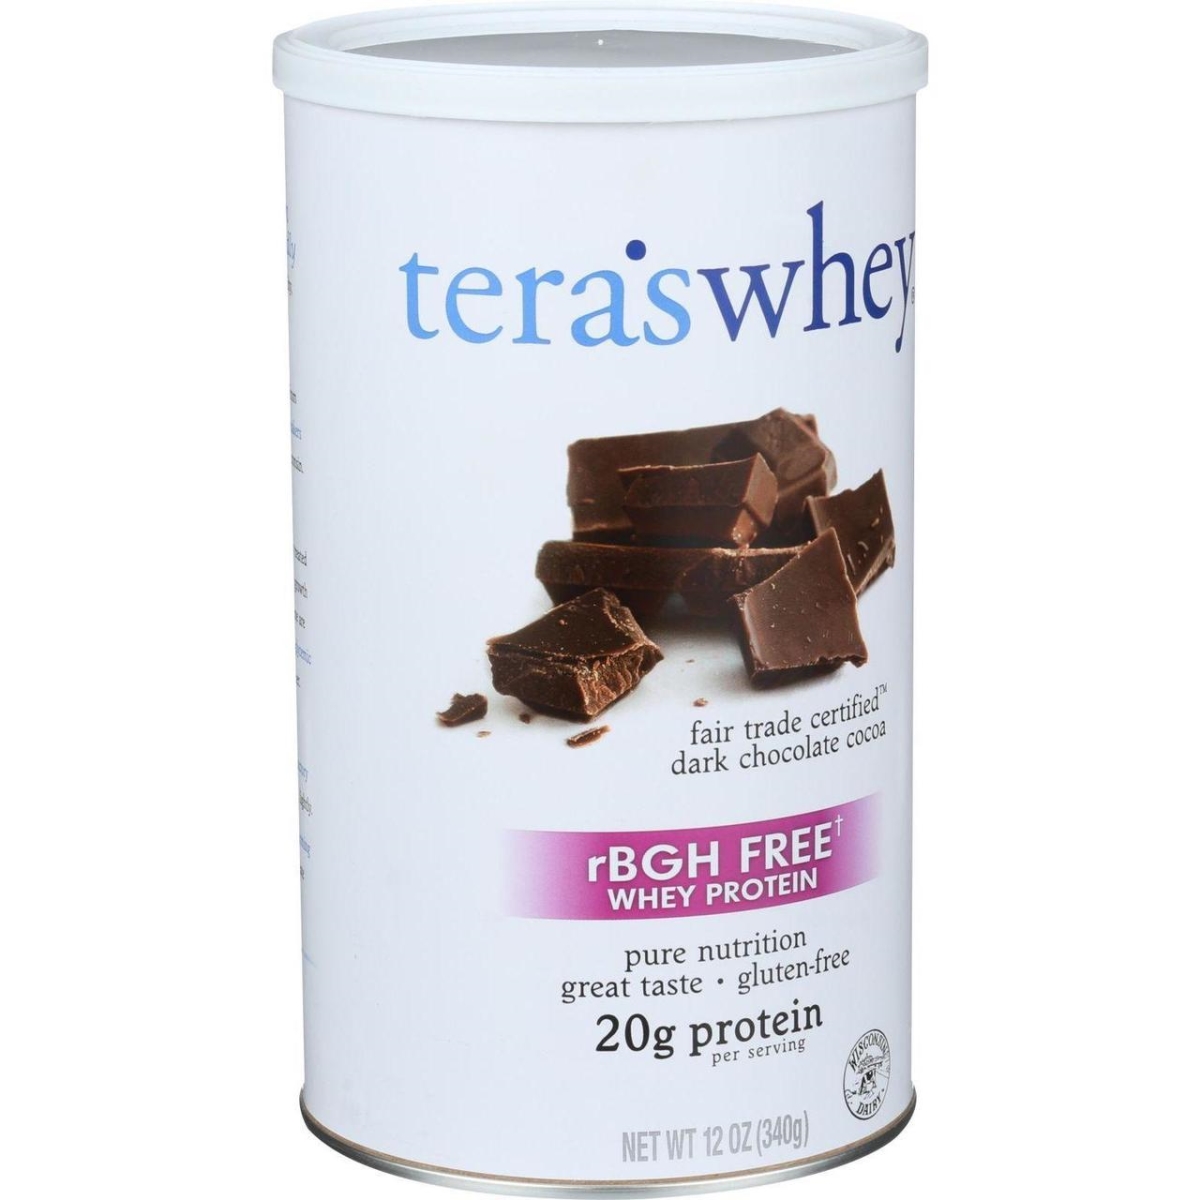 Hg0336610 12 Oz Protein Rbgh Free Fair Trade, Dark Chocolate